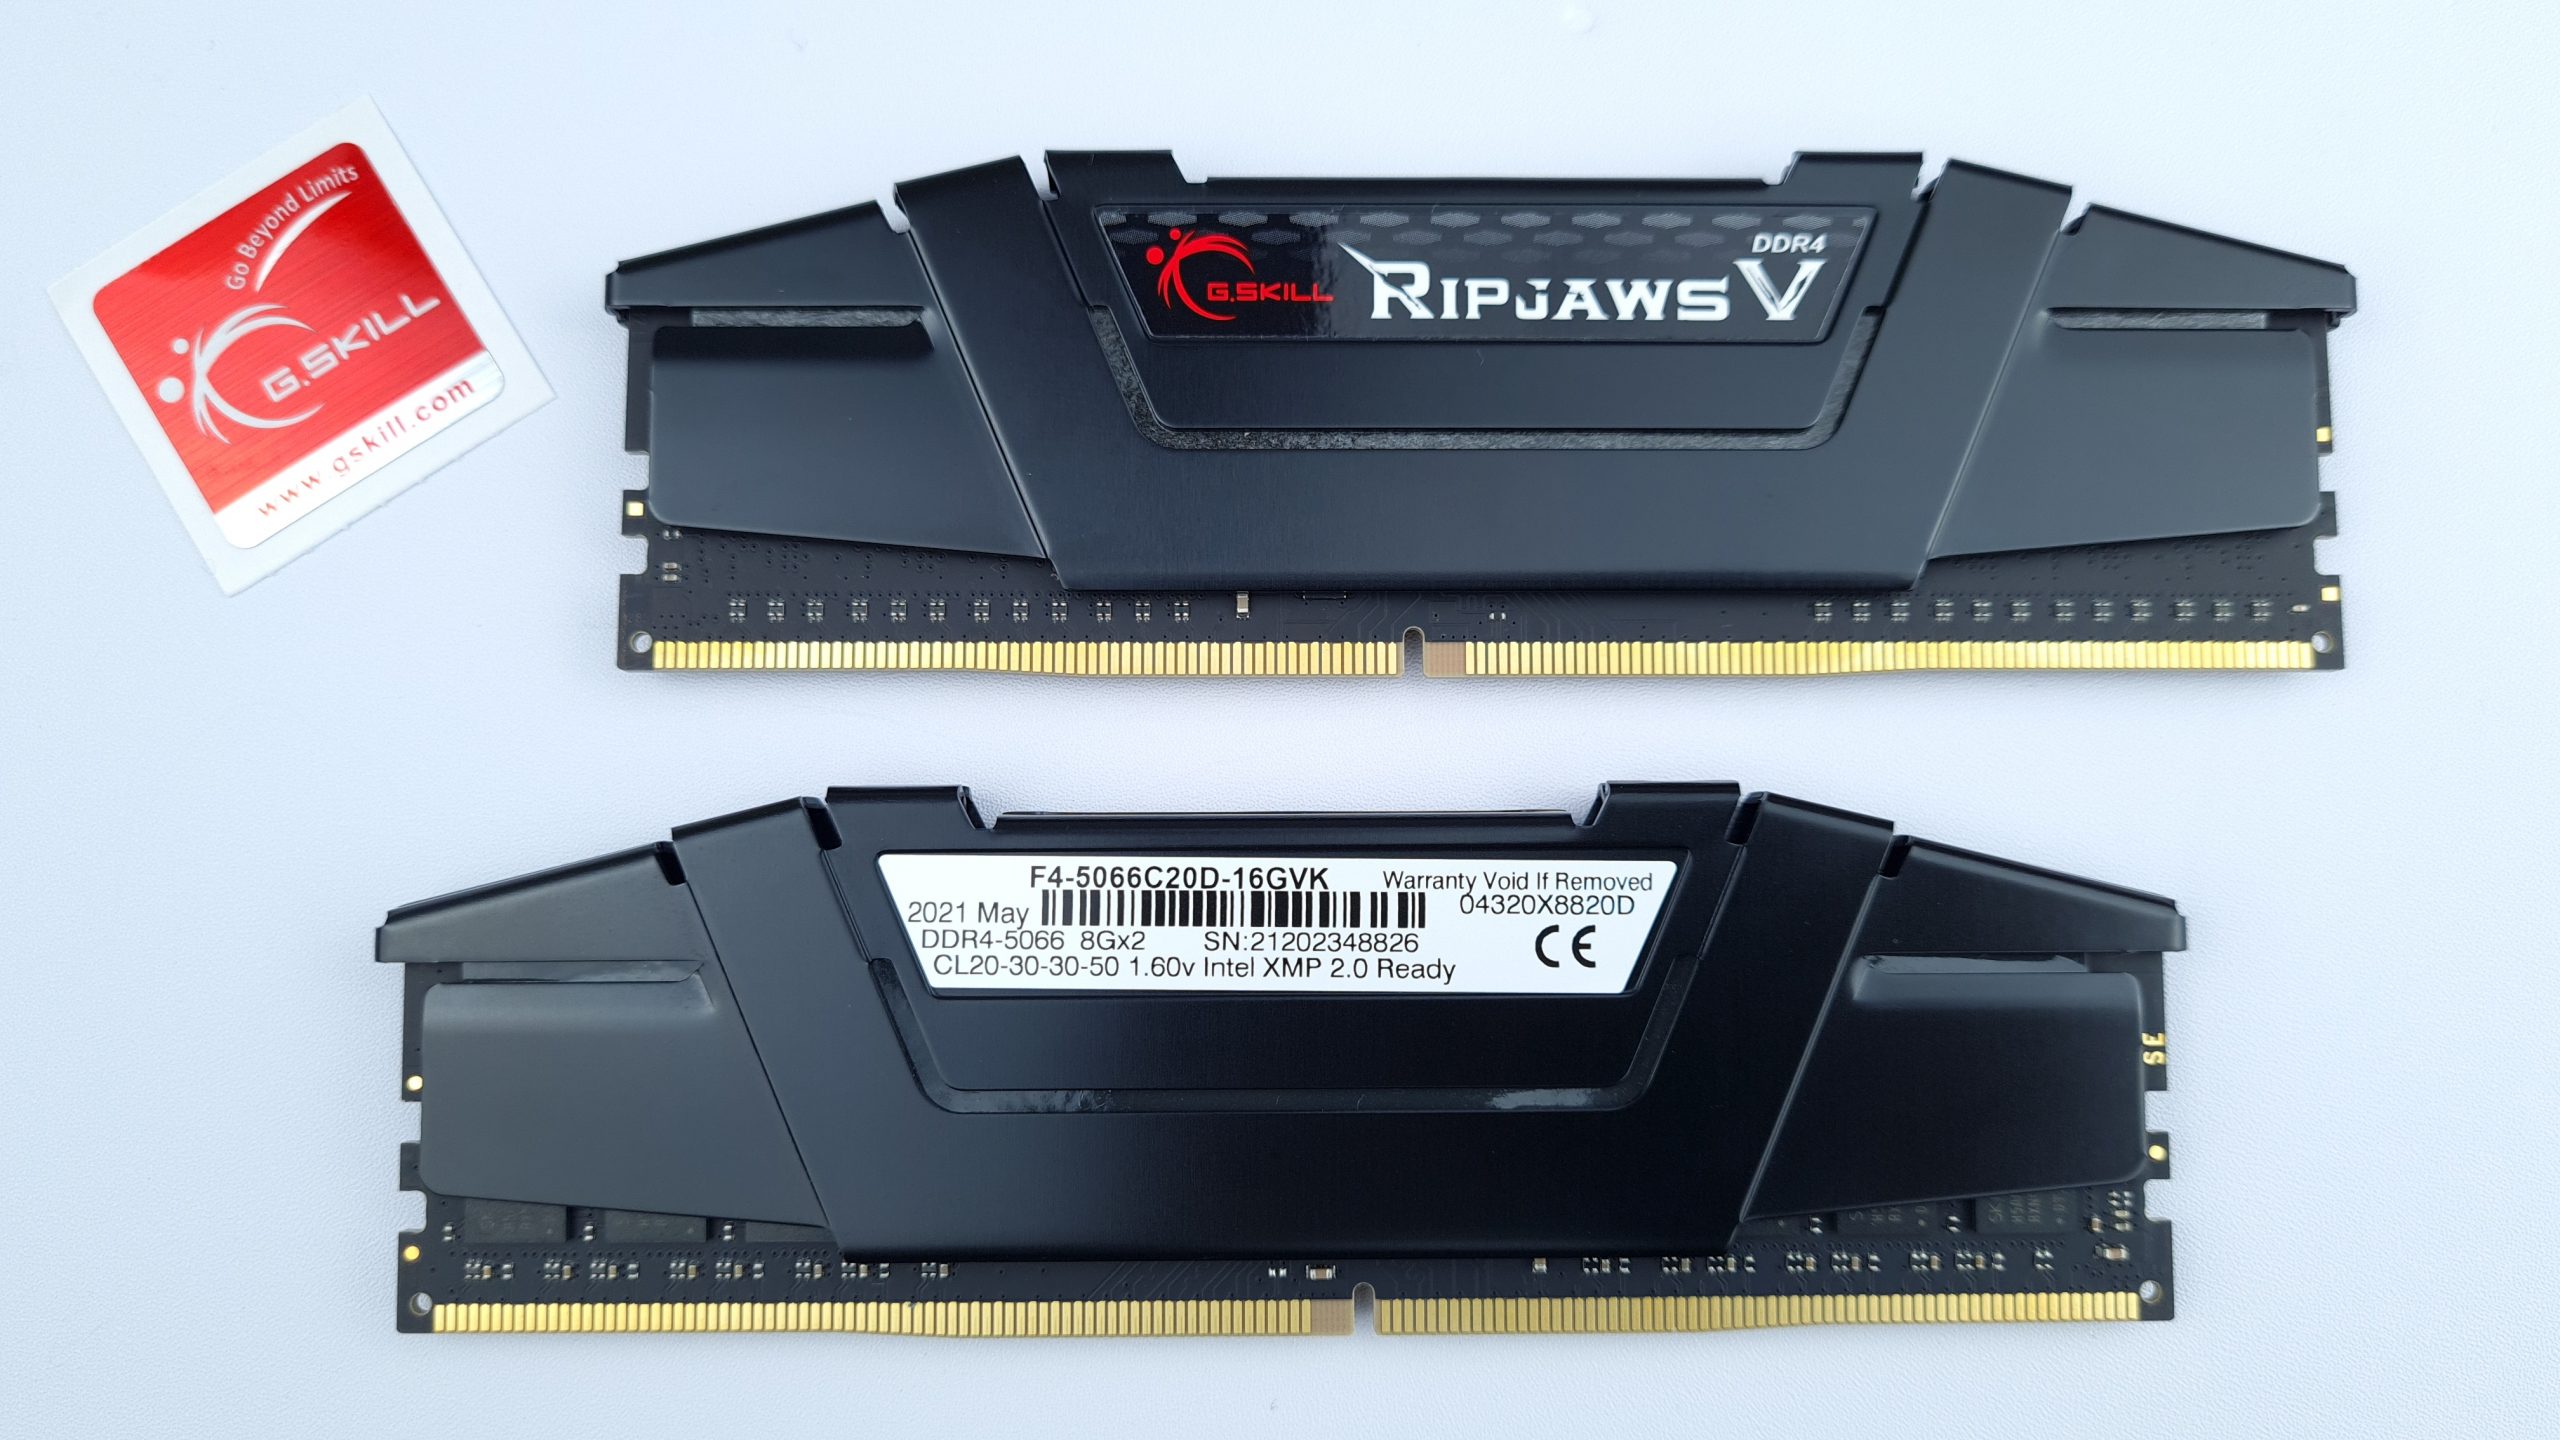 G.SKILL Ripjaws V DDR4-5066 CL20 16GB (8GBx2) Review by igorsLAB - G.SKILL  International Enterprise Co., Ltd.